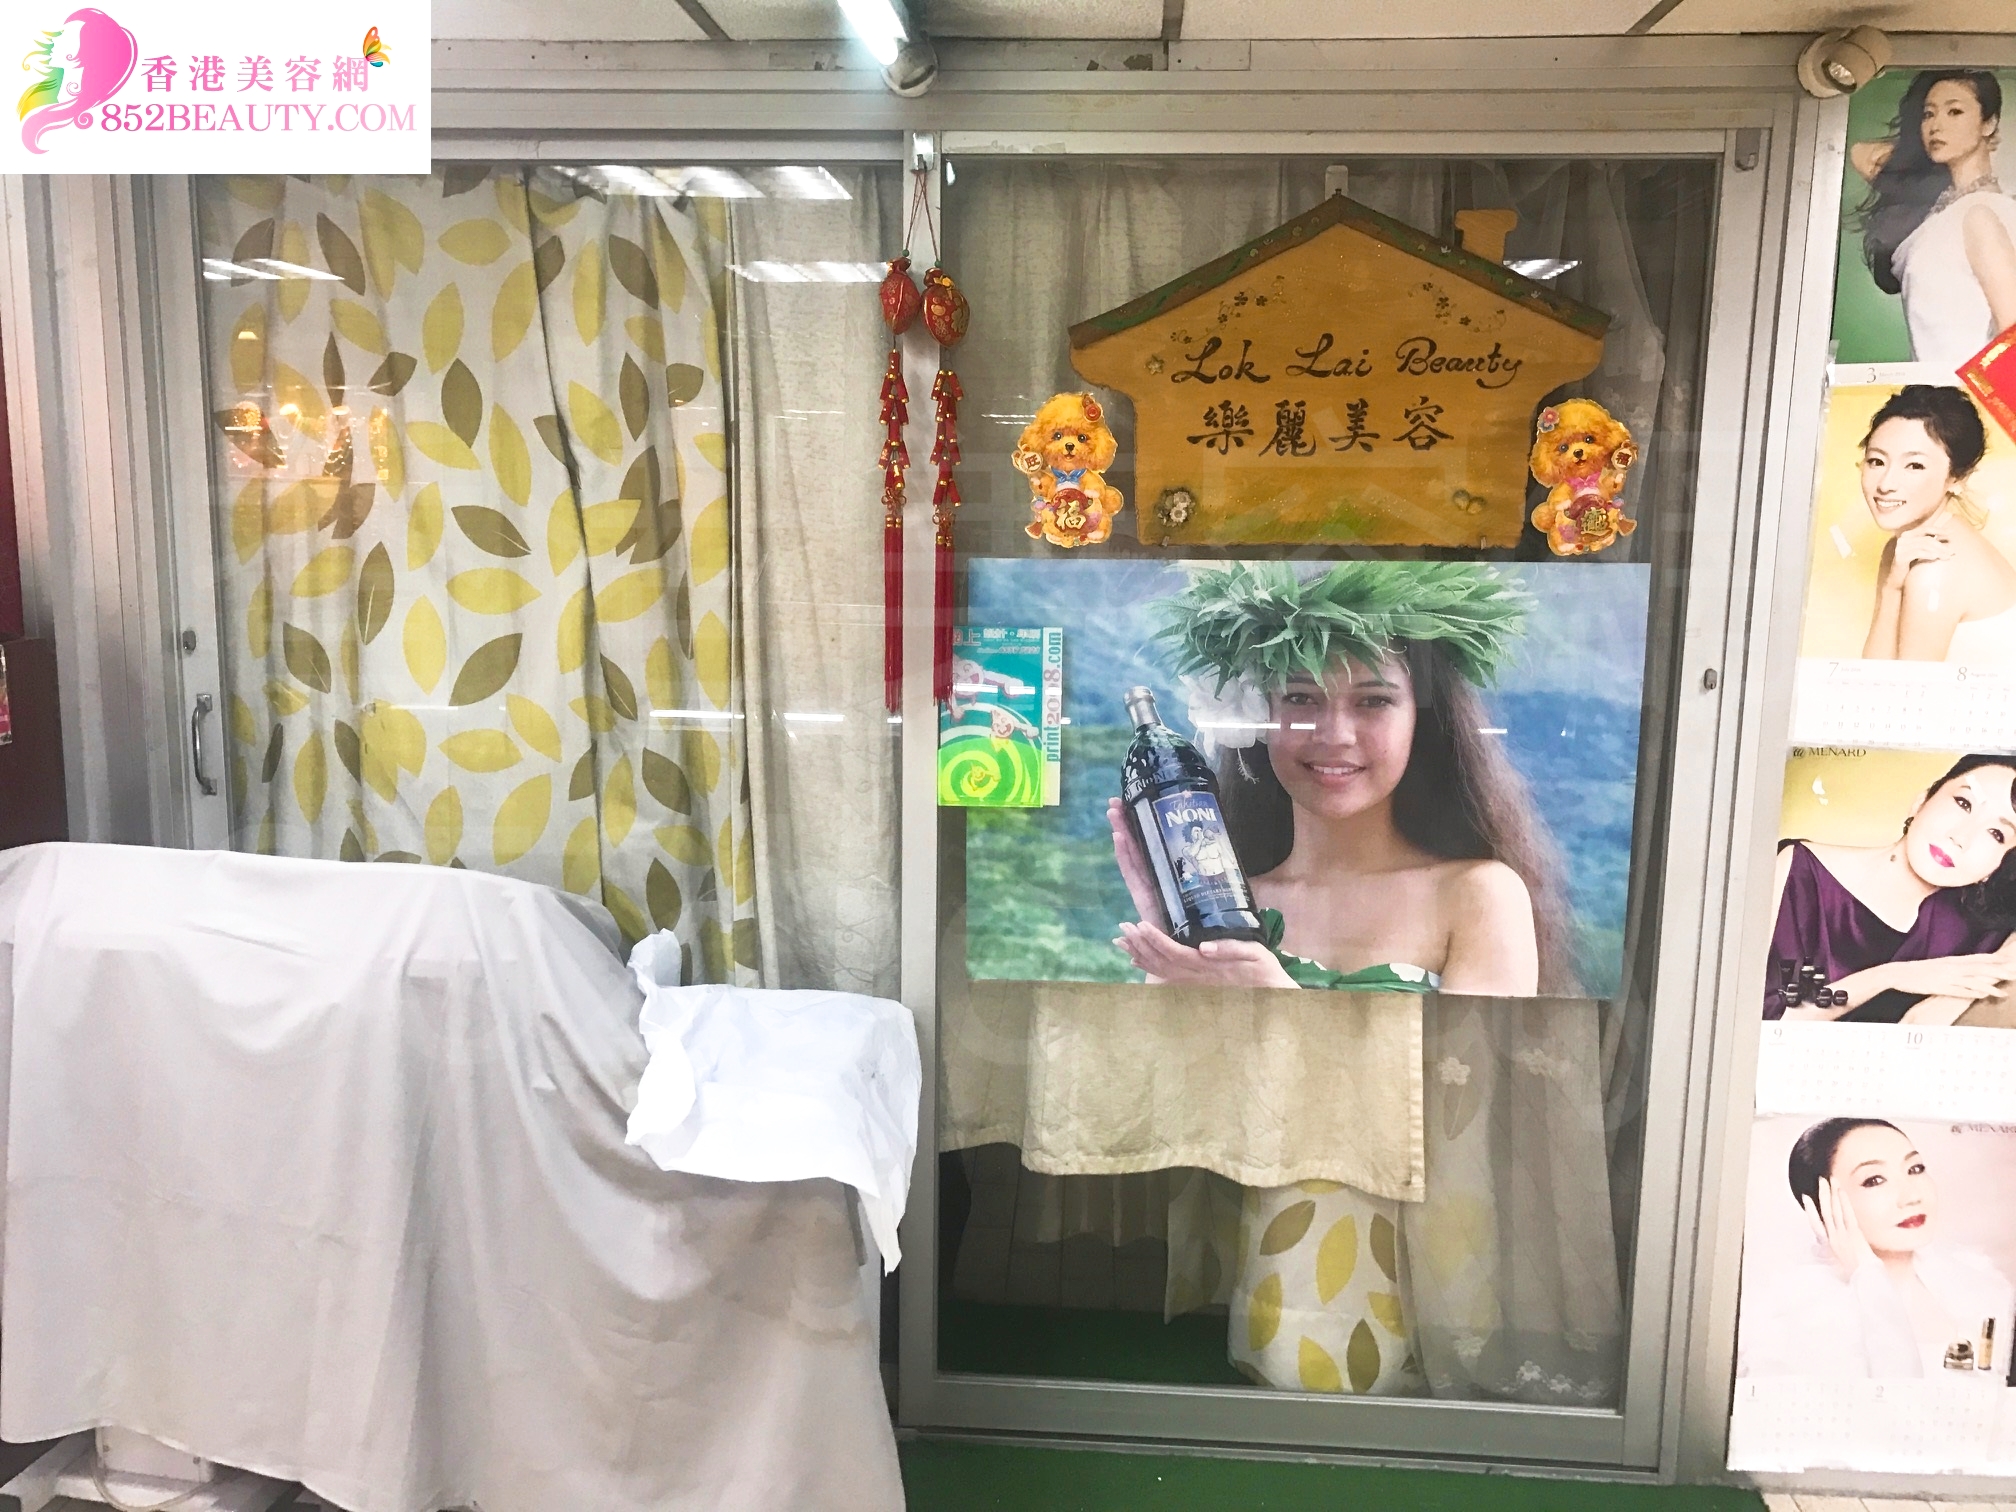 香港美容網 Hong Kong Beauty Salon 美容院 / 美容師: 樂麗美容 Lok Lai Beauty